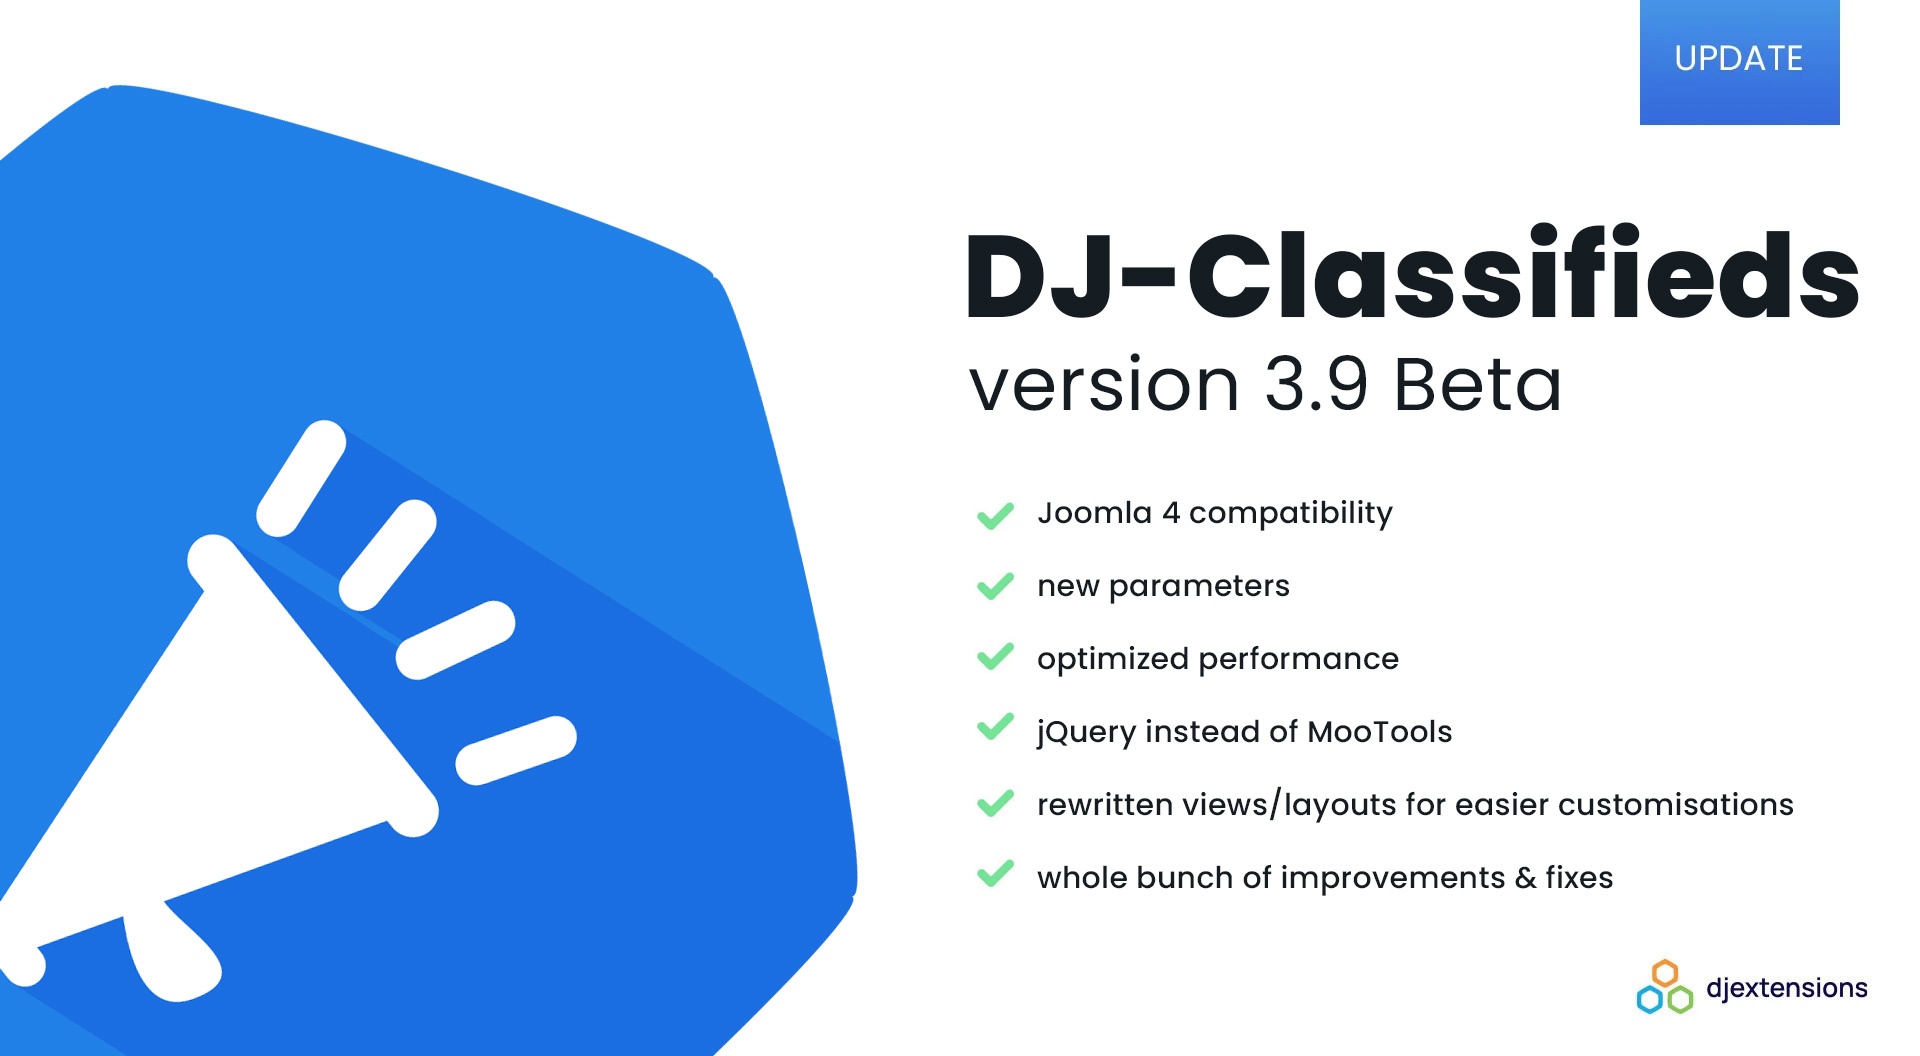 Joomla News: Huge Announcement - DJ-Classifieds with Joomla 4 support